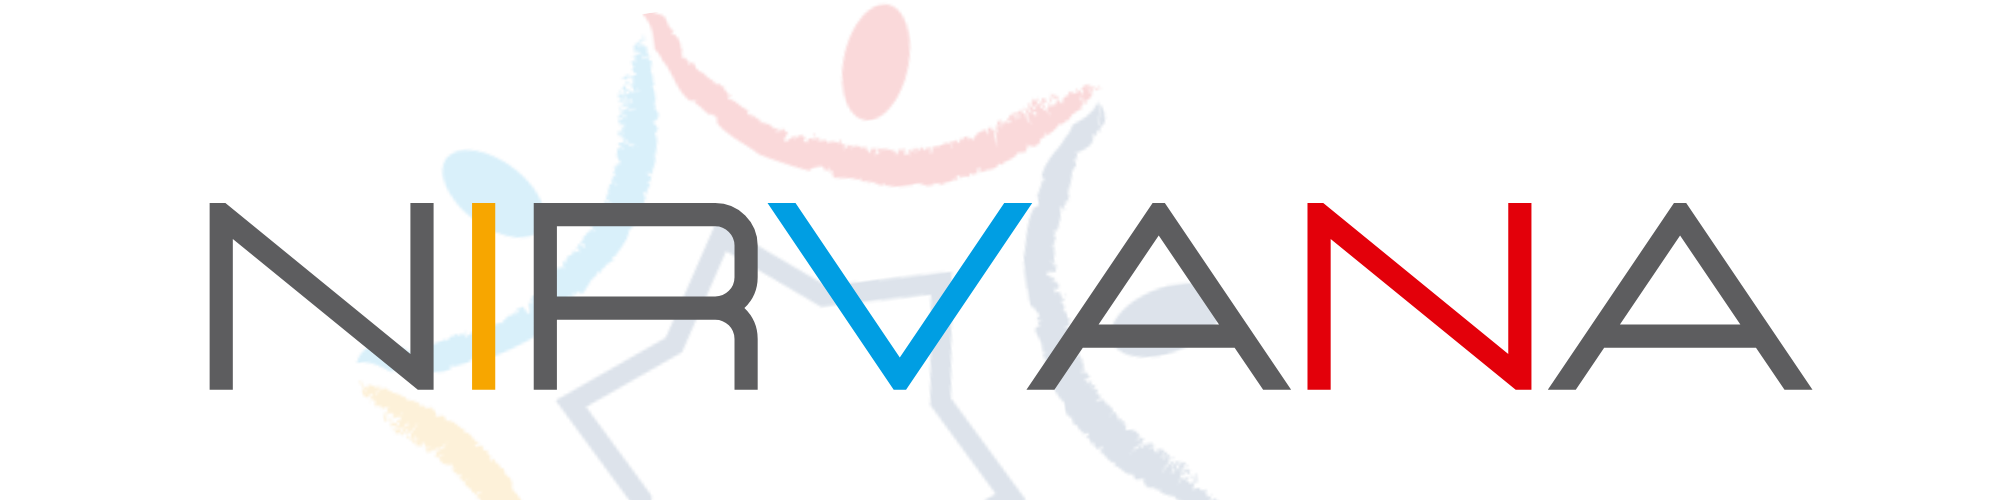 nirvana logotipo fondazione uspidalet